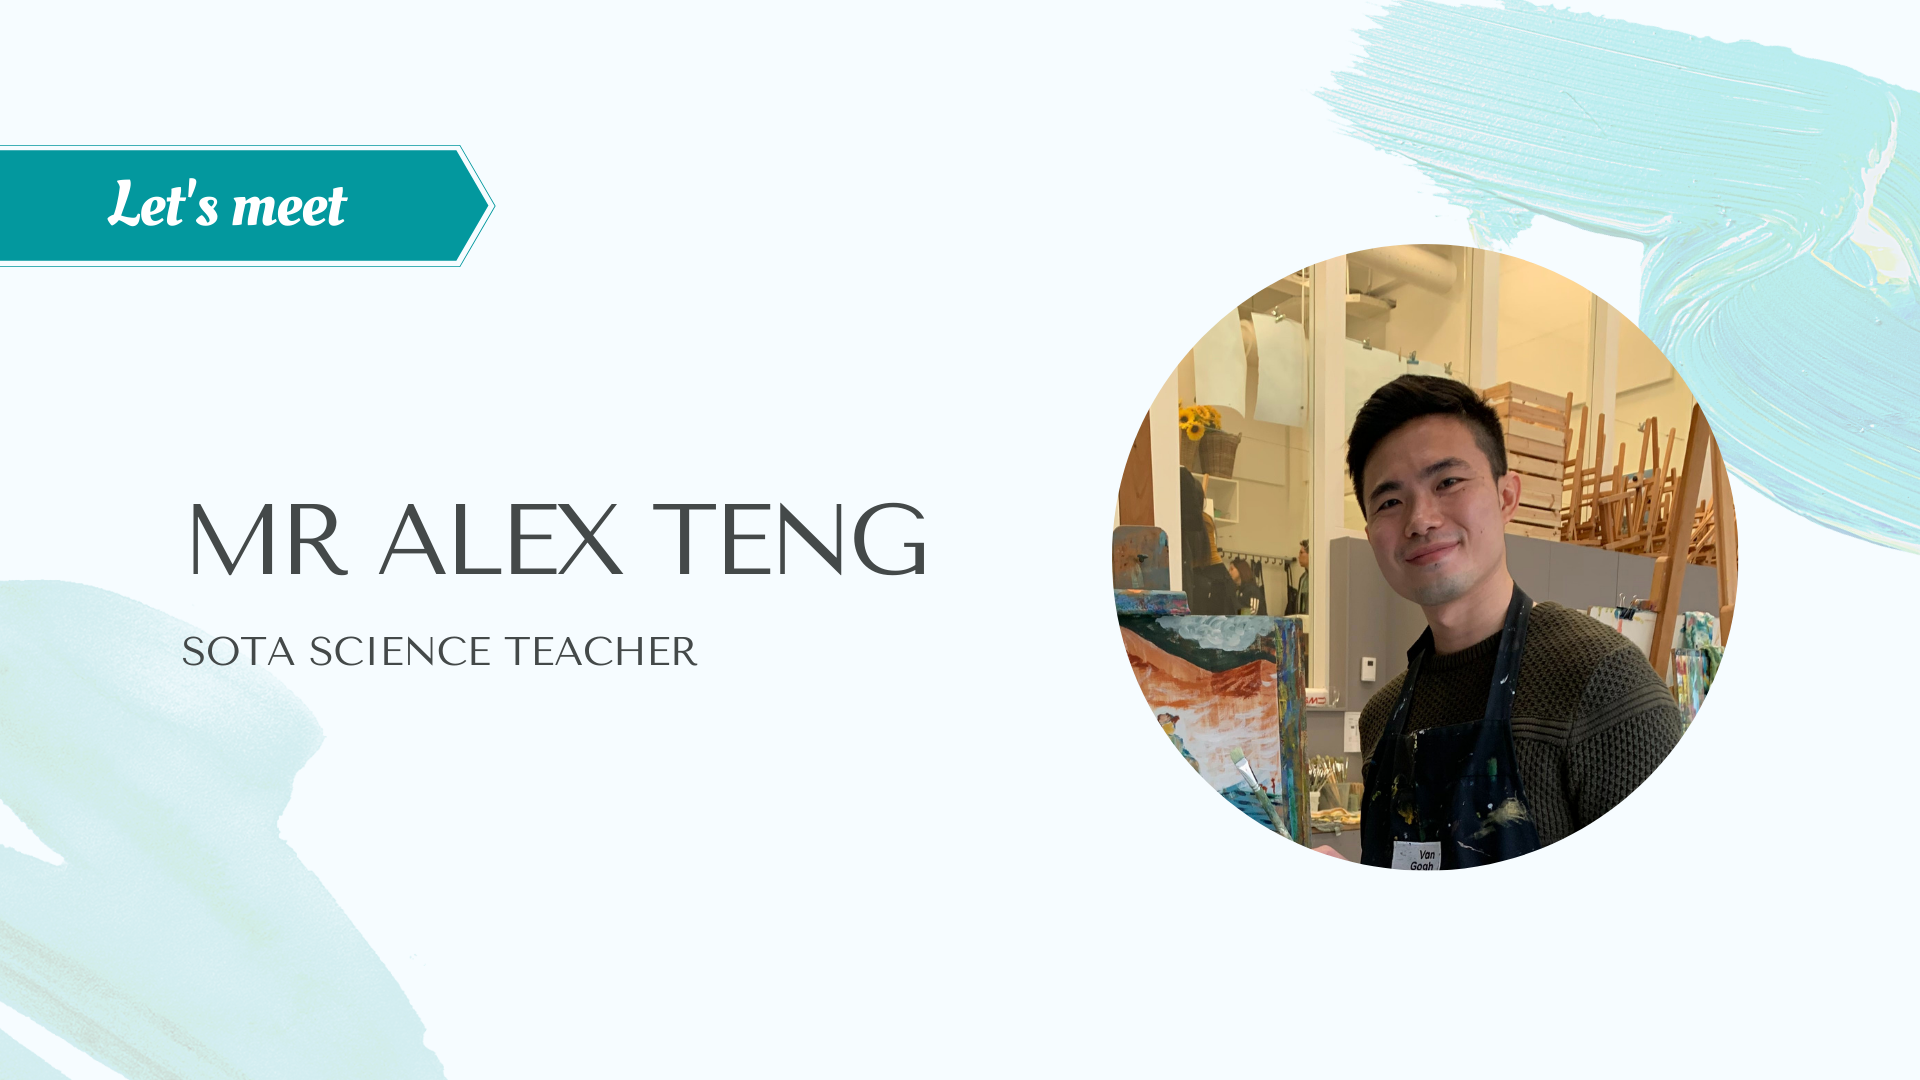 Let's meet - Mr Alex Teng